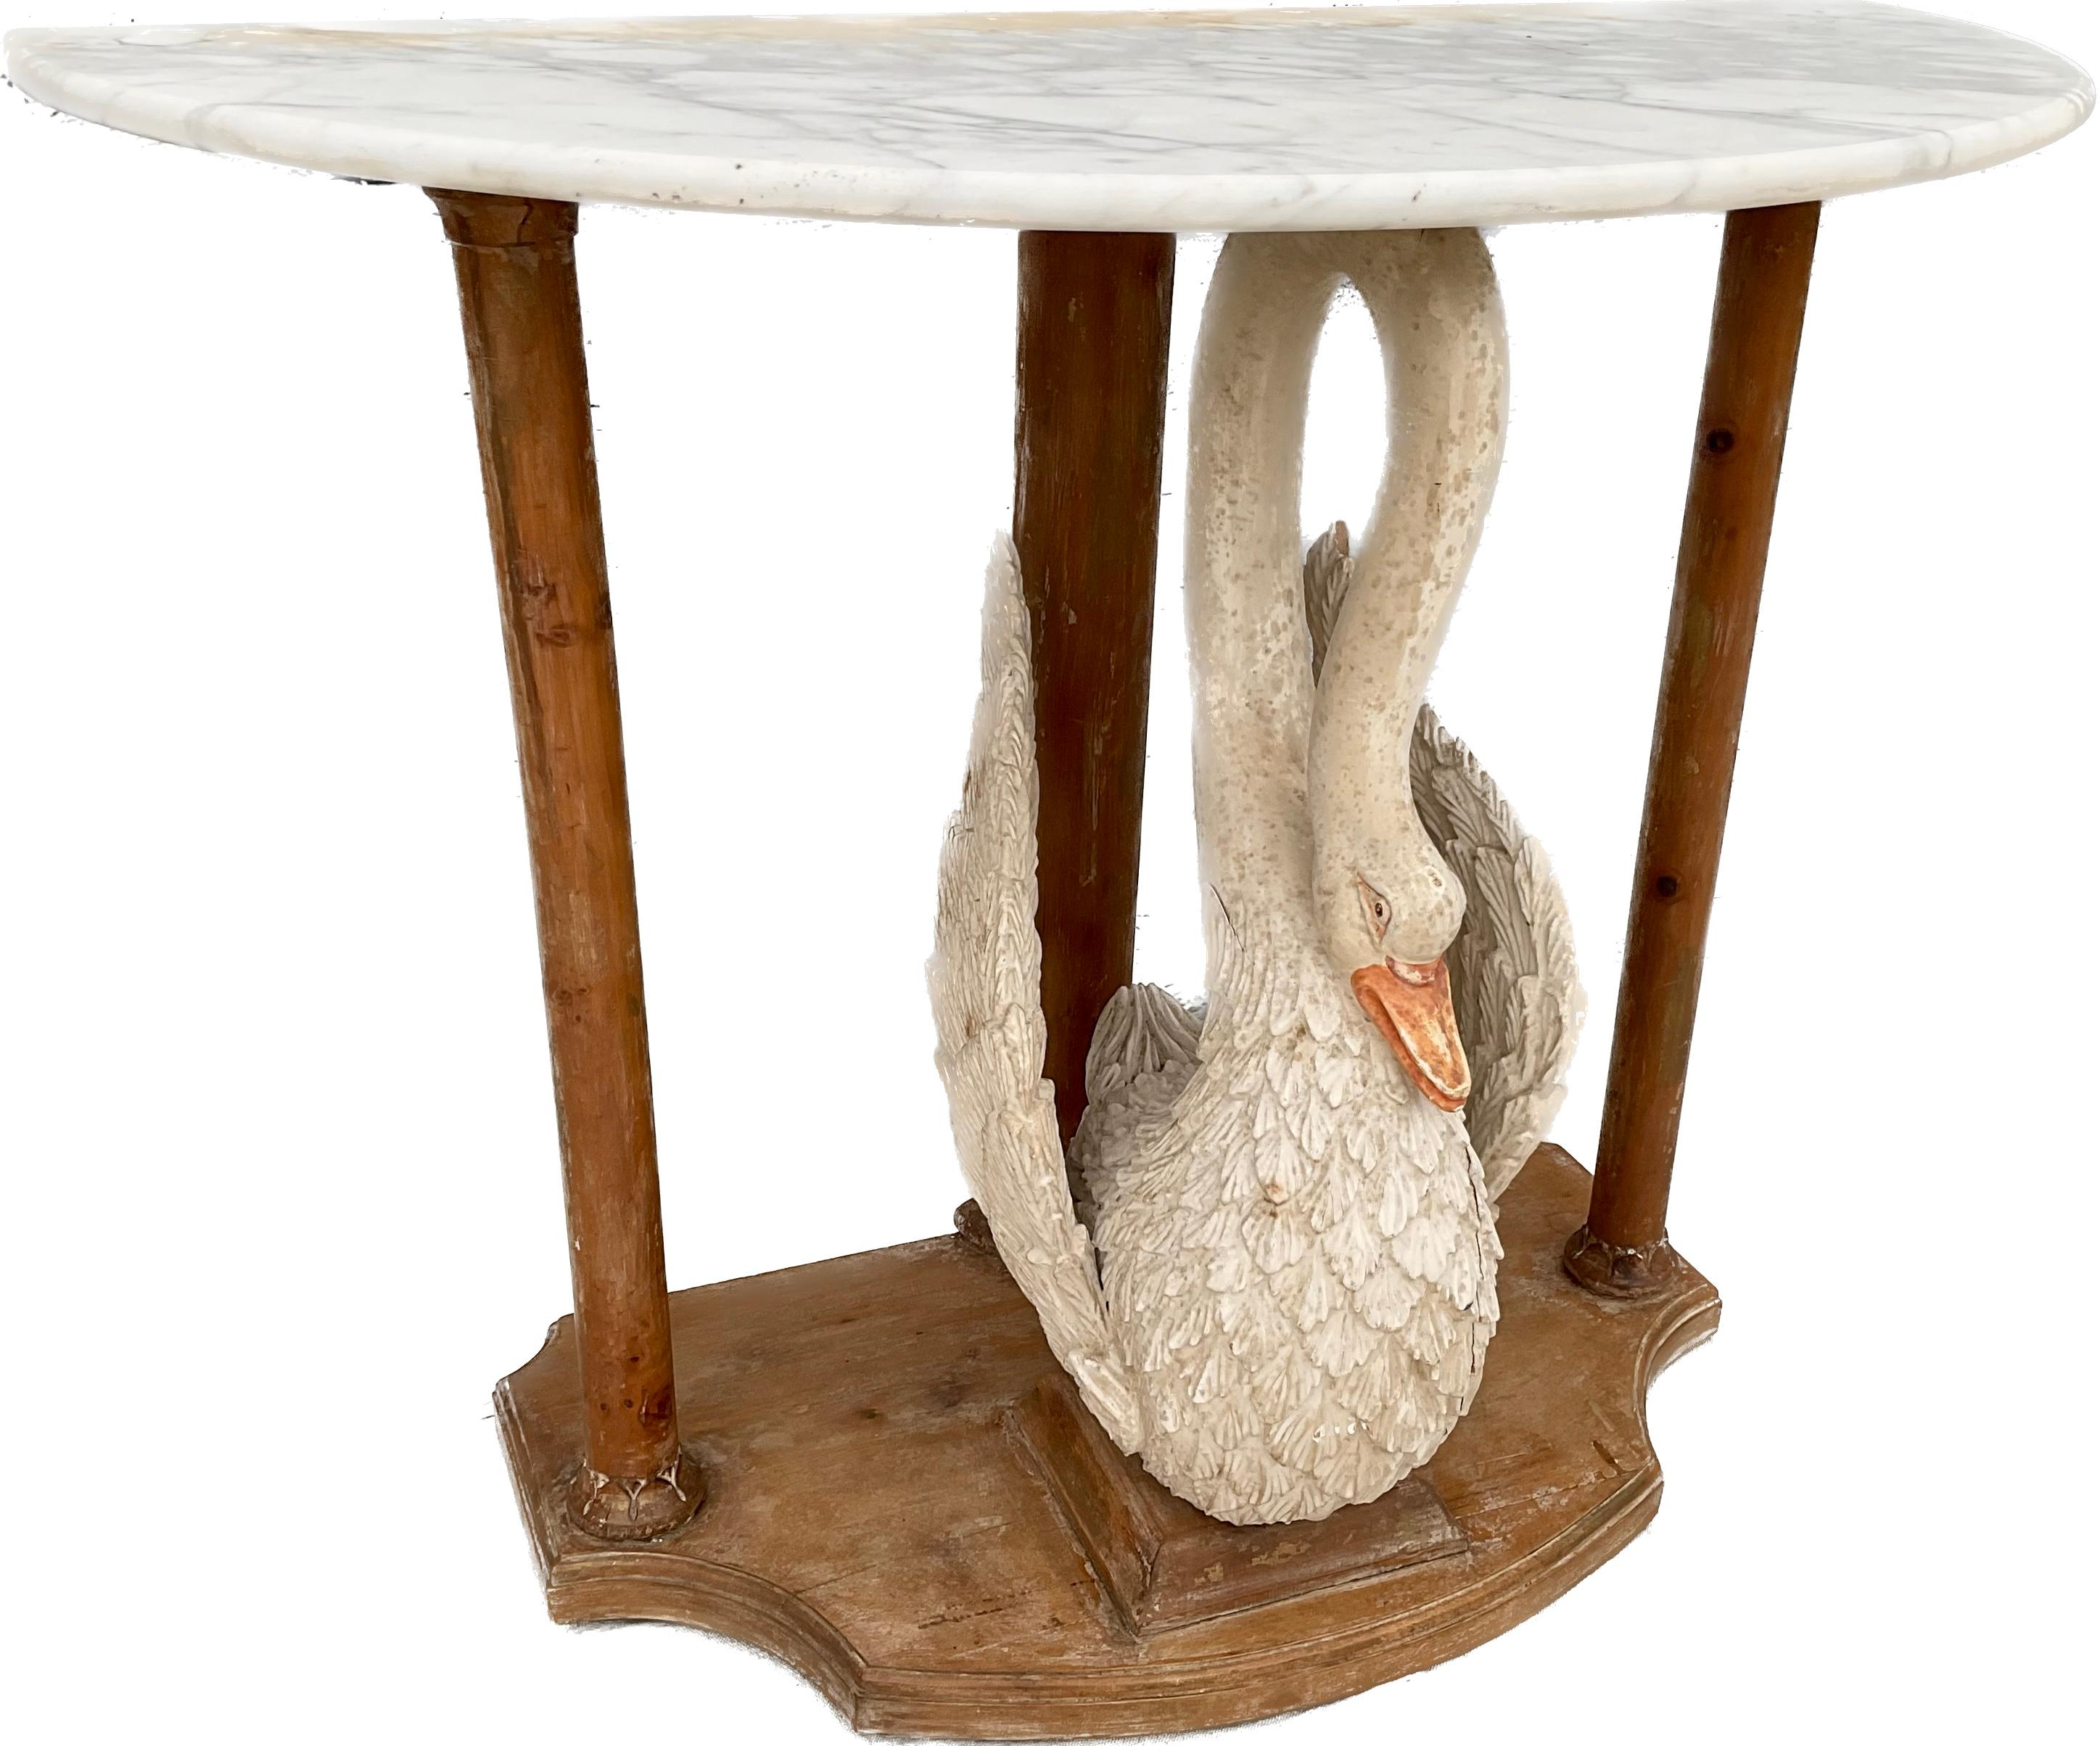 Einzigartiger handgeschnitzter und polychrom bemalter Konsolentisch Swan aus der Mitte des Jahrhunderts. Der Tisch hat eine Platte aus Carrara-Marmor auf drei Säulen, die einen großen, handgeschnitzten Holzschwan flankieren. Die Farbe des Schwans